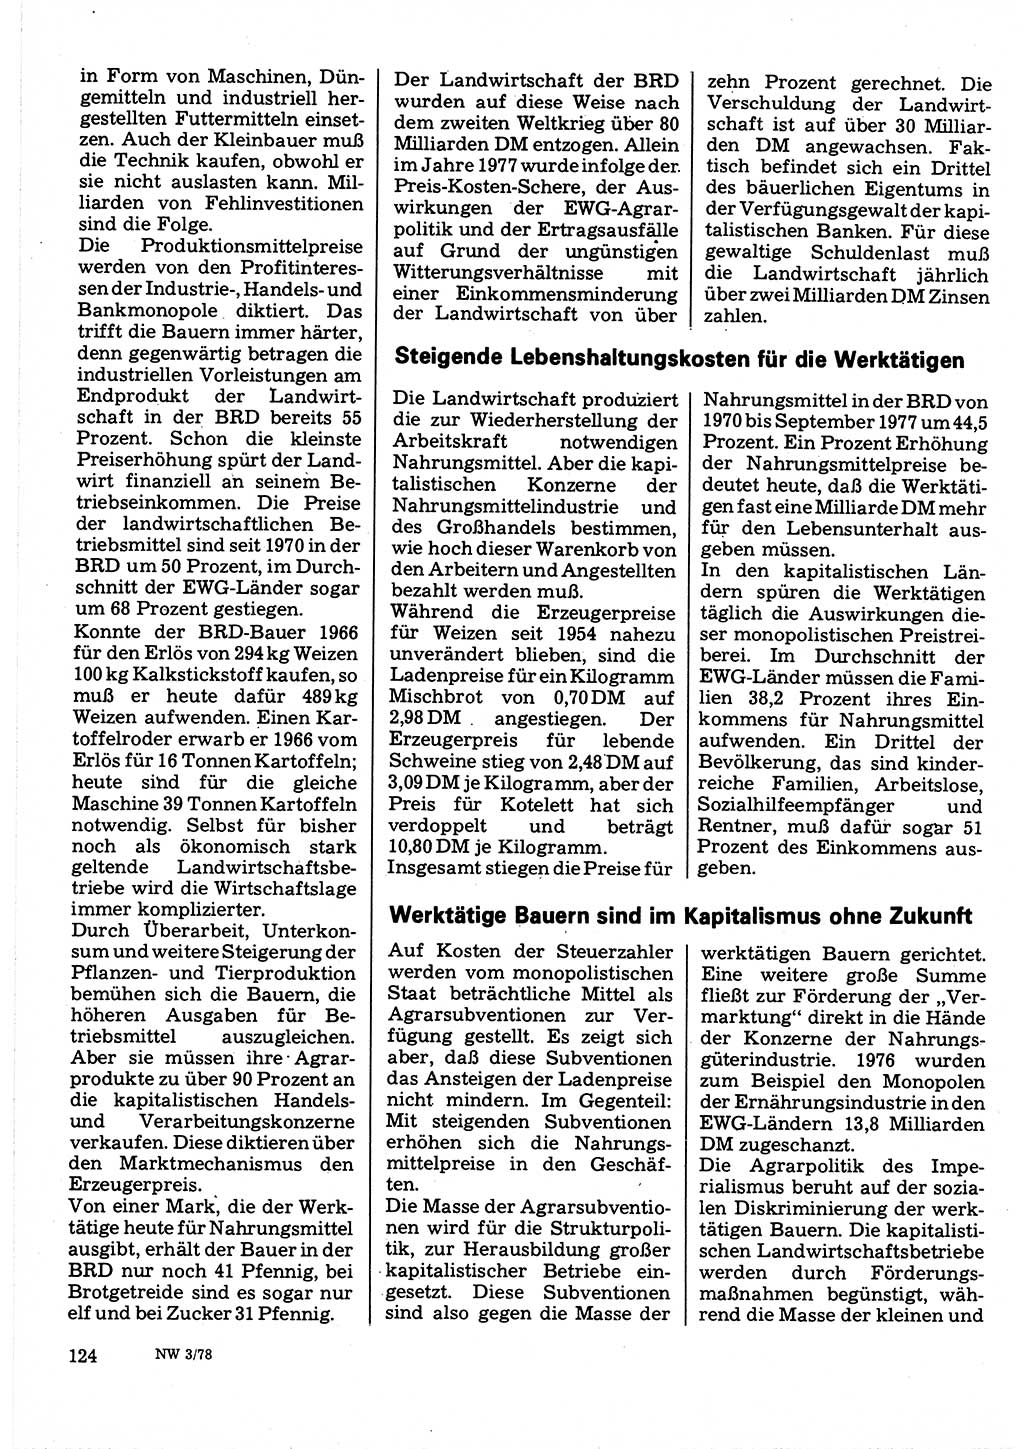 Neuer Weg (NW), Organ des Zentralkomitees (ZK) der SED (Sozialistische Einheitspartei Deutschlands) für Fragen des Parteilebens, 33. Jahrgang [Deutsche Demokratische Republik (DDR)] 1978, Seite 124 (NW ZK SED DDR 1978, S. 124)